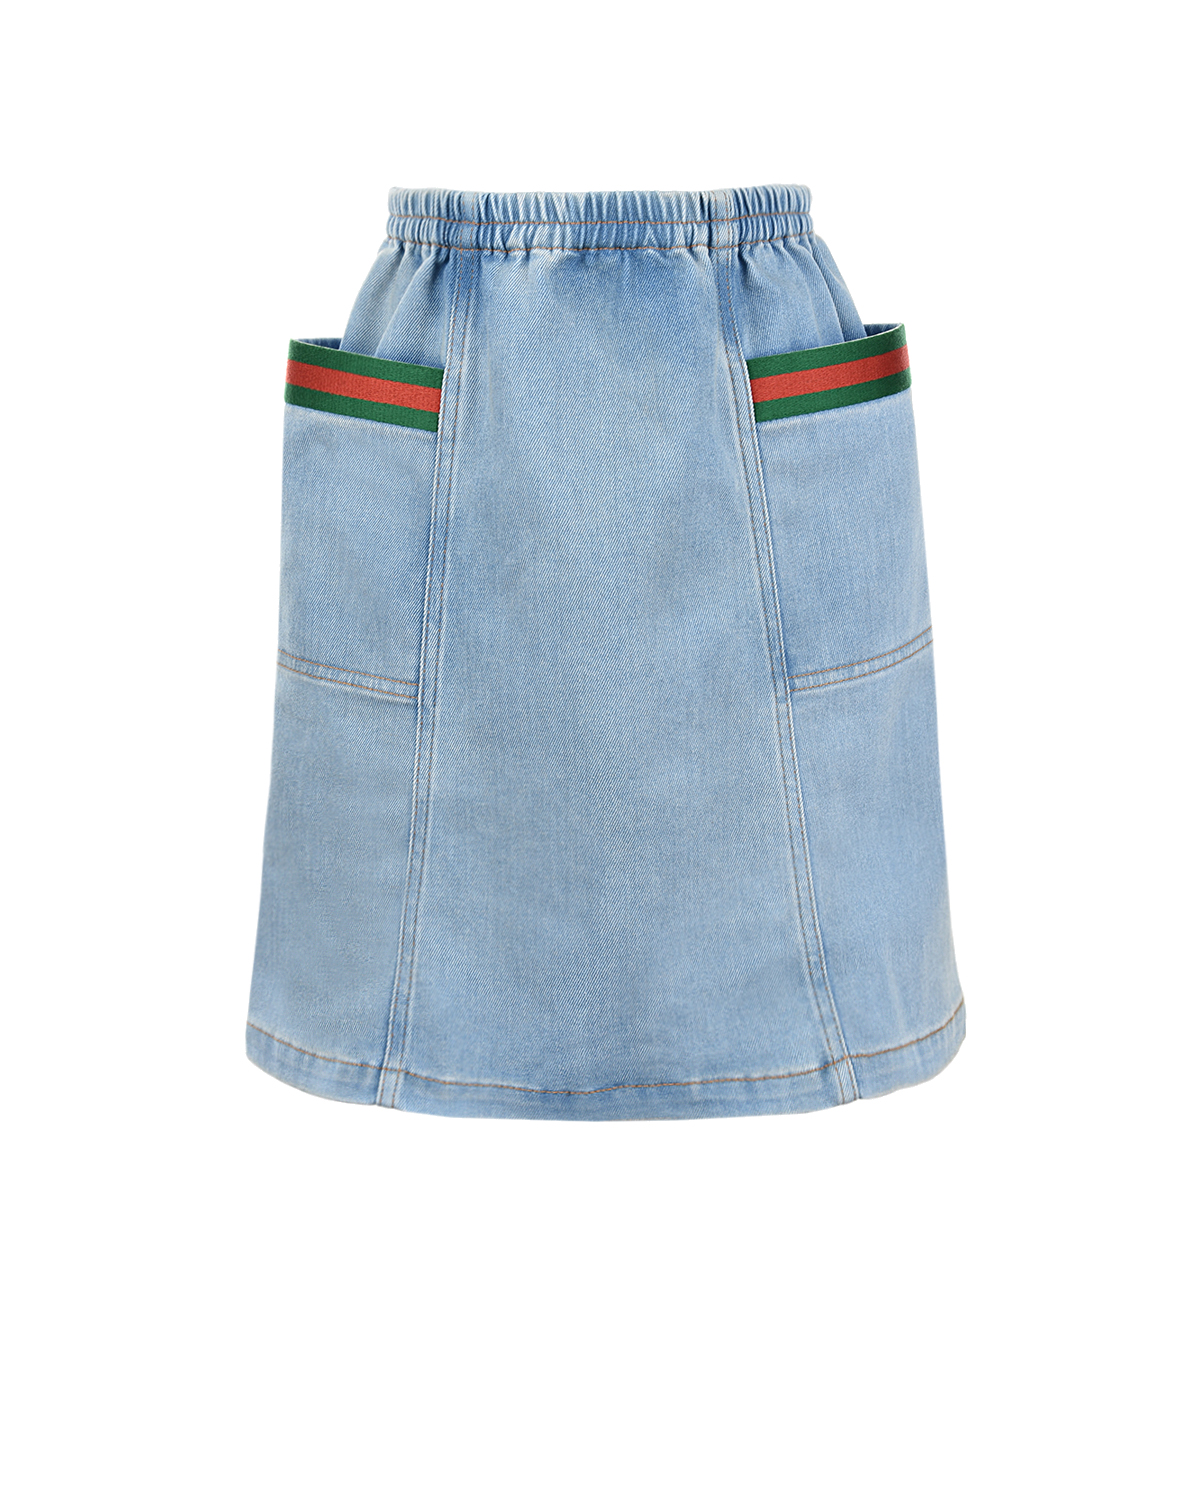 Голубая джинсовая юбка с накладными карманами GUCCI детская